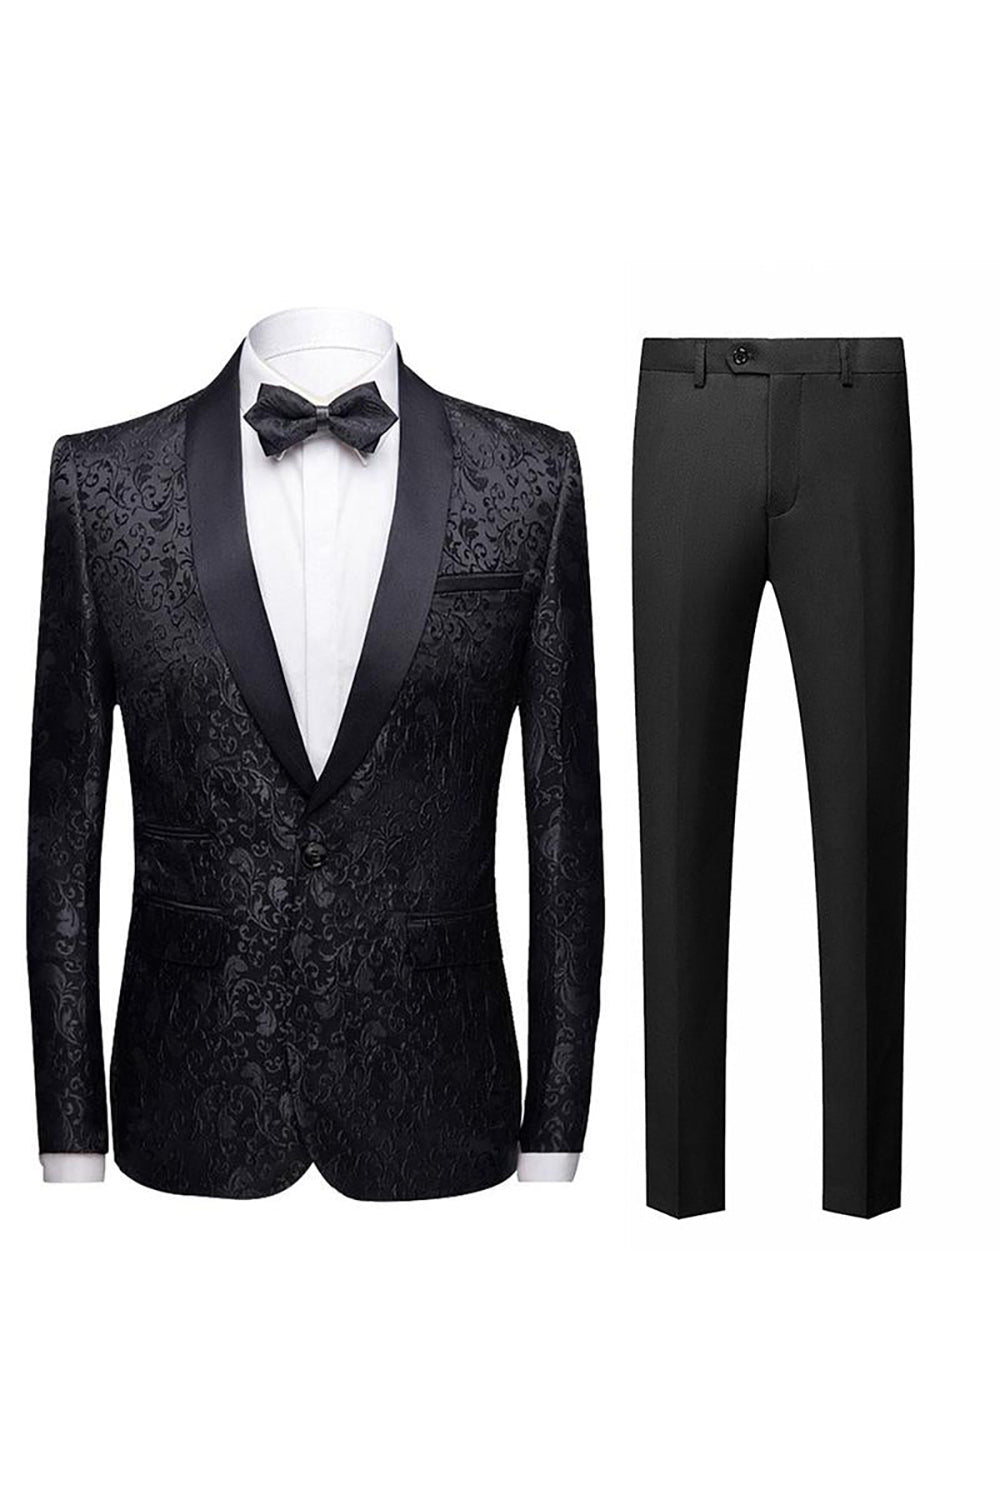 Black Jacquard Shawl Lapel Men's 2 Pieces Suits